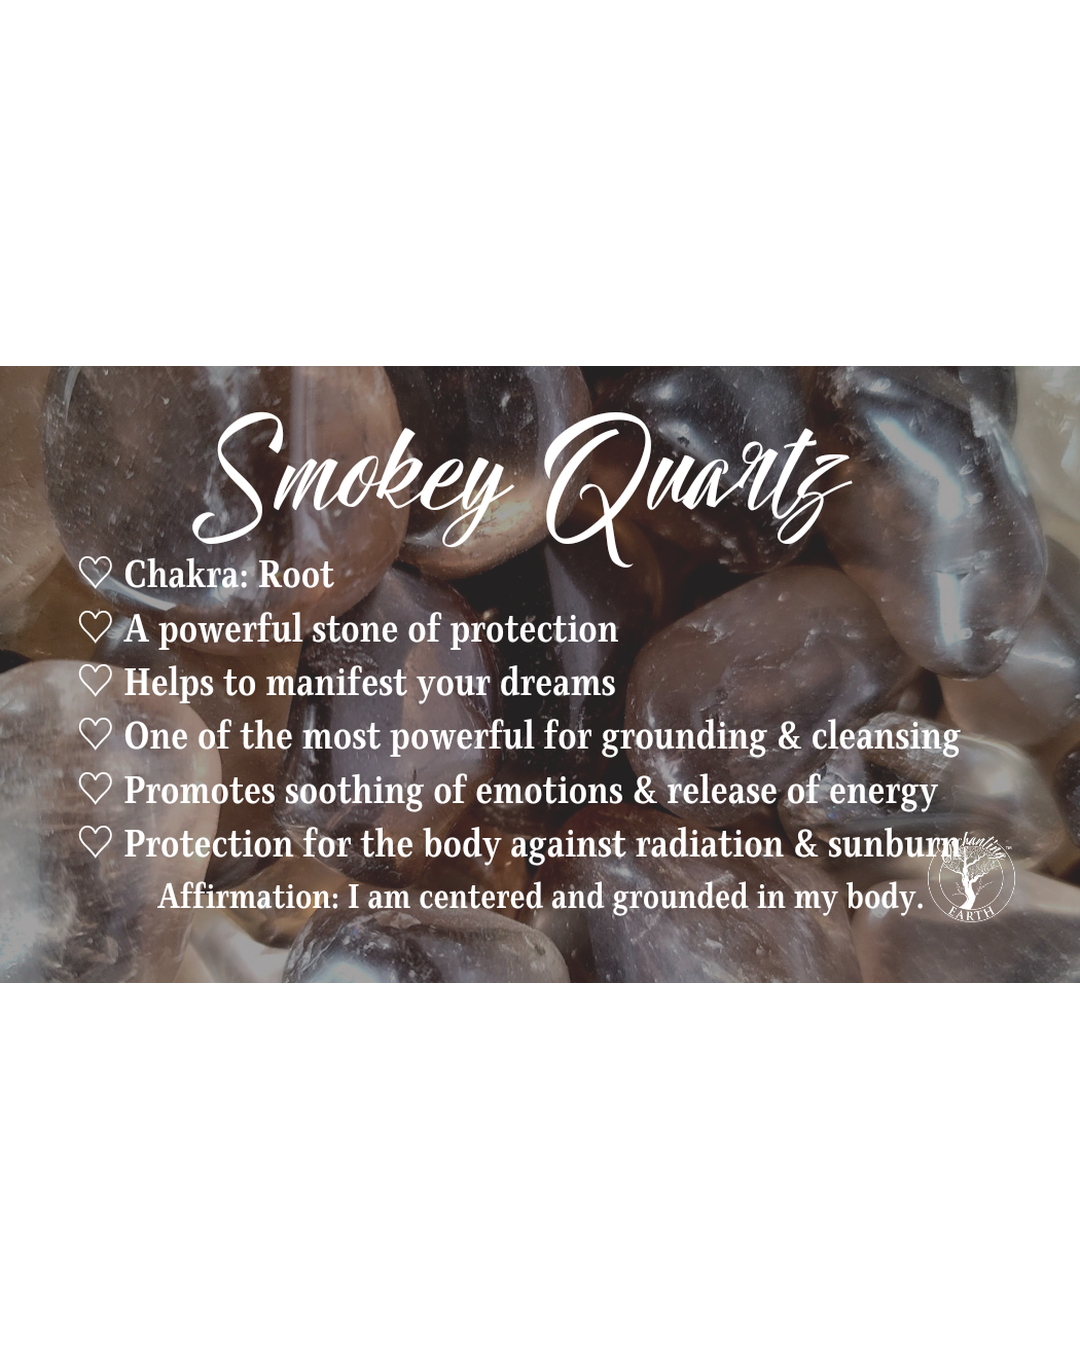 Smokey Quartz Bracelet for Manifestation, Protection and Purification